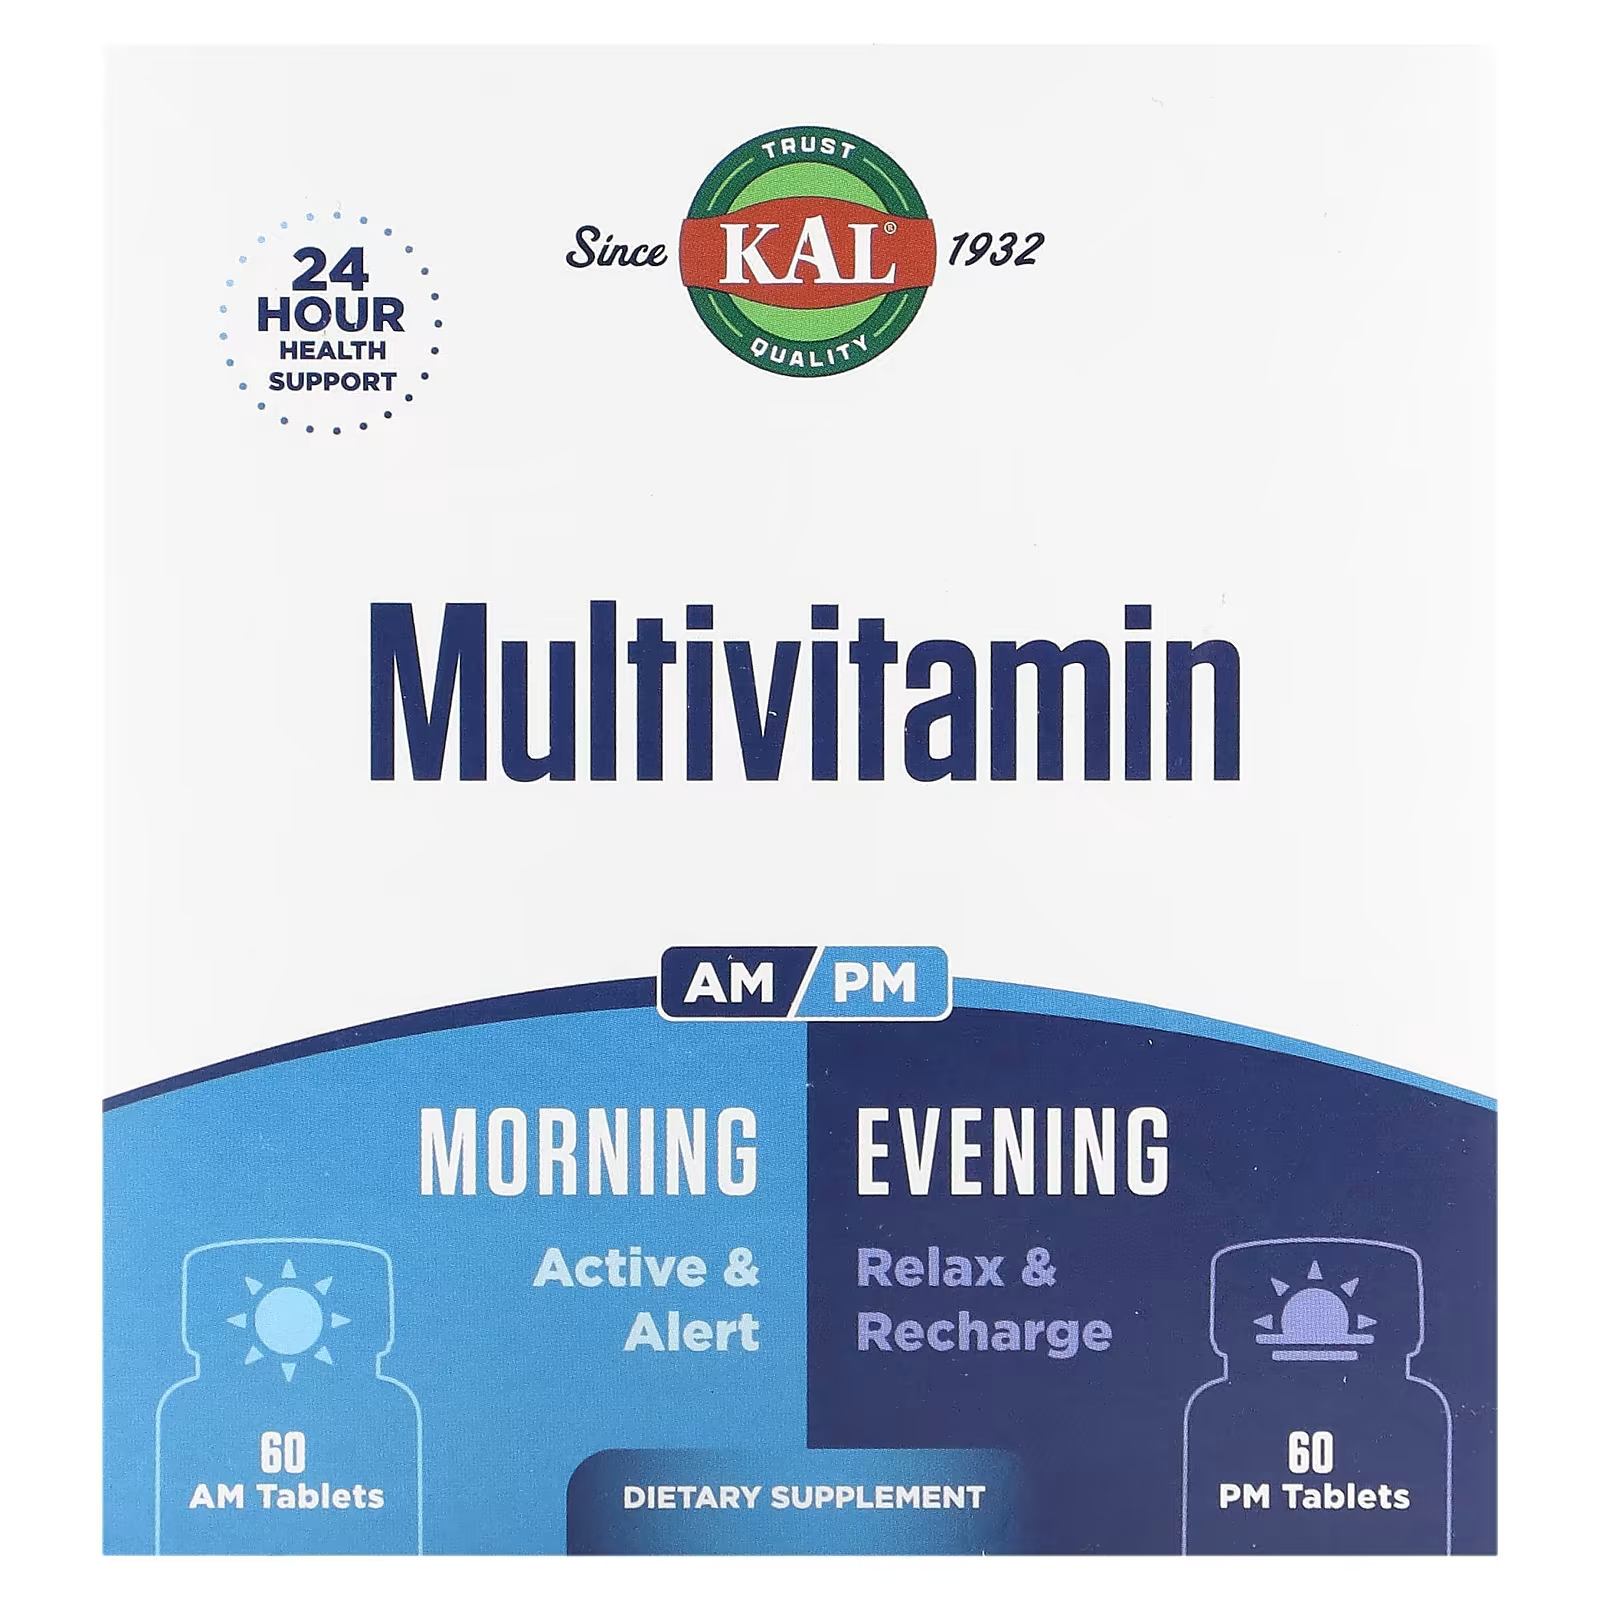 Мультивитамины Kal утром и вечером, 2 упаковки по 60 таблеток kal мультивитамины для женщин старше 50 лет утром и вечером 2 пакетика 60 таблеток в каждом